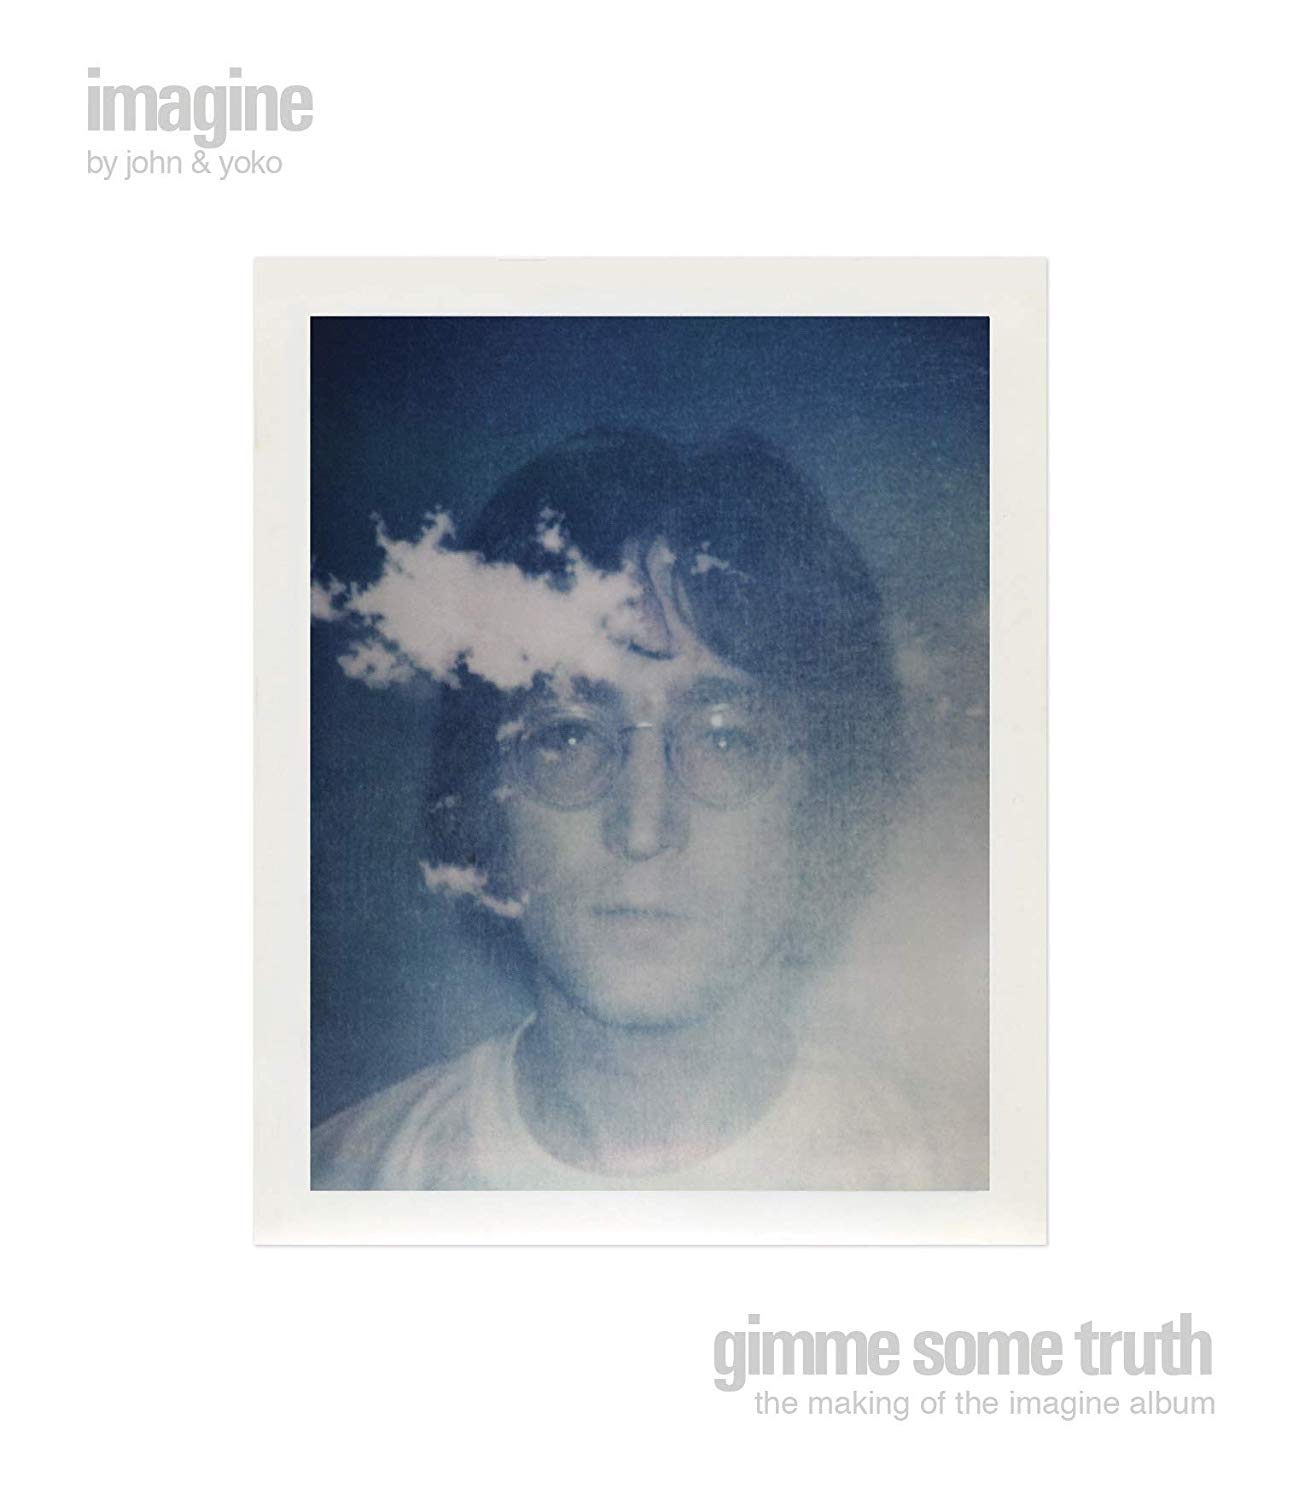 John Lennon's Imagine reissued as comprehensive six-disc box set 